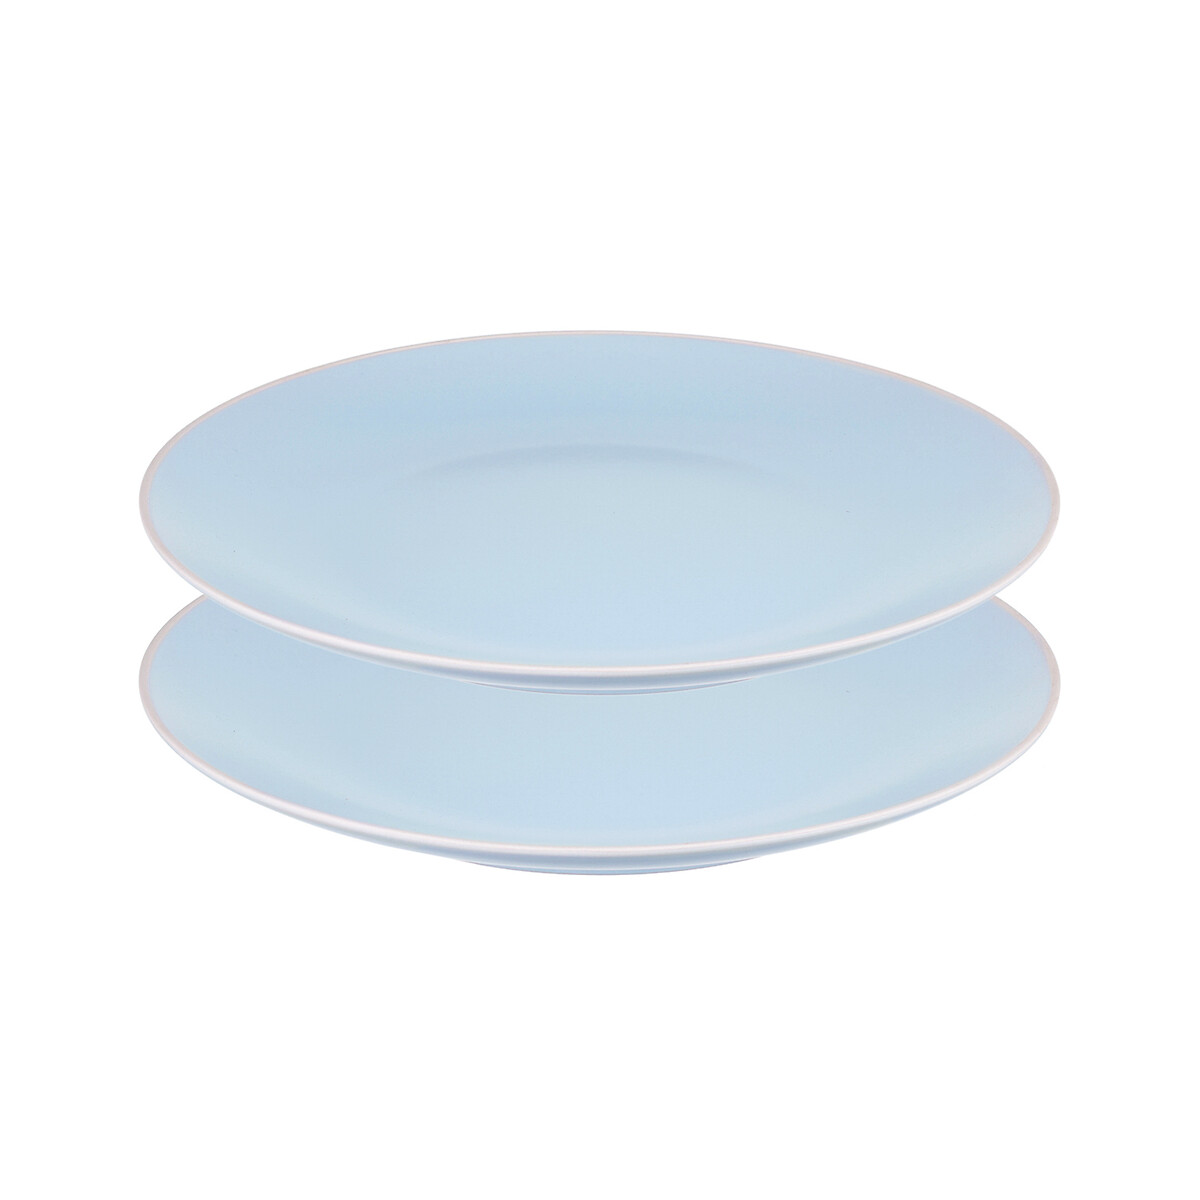 цена Набор обеденных тарелок Simplicity 26 см 2 шт единый размер синий